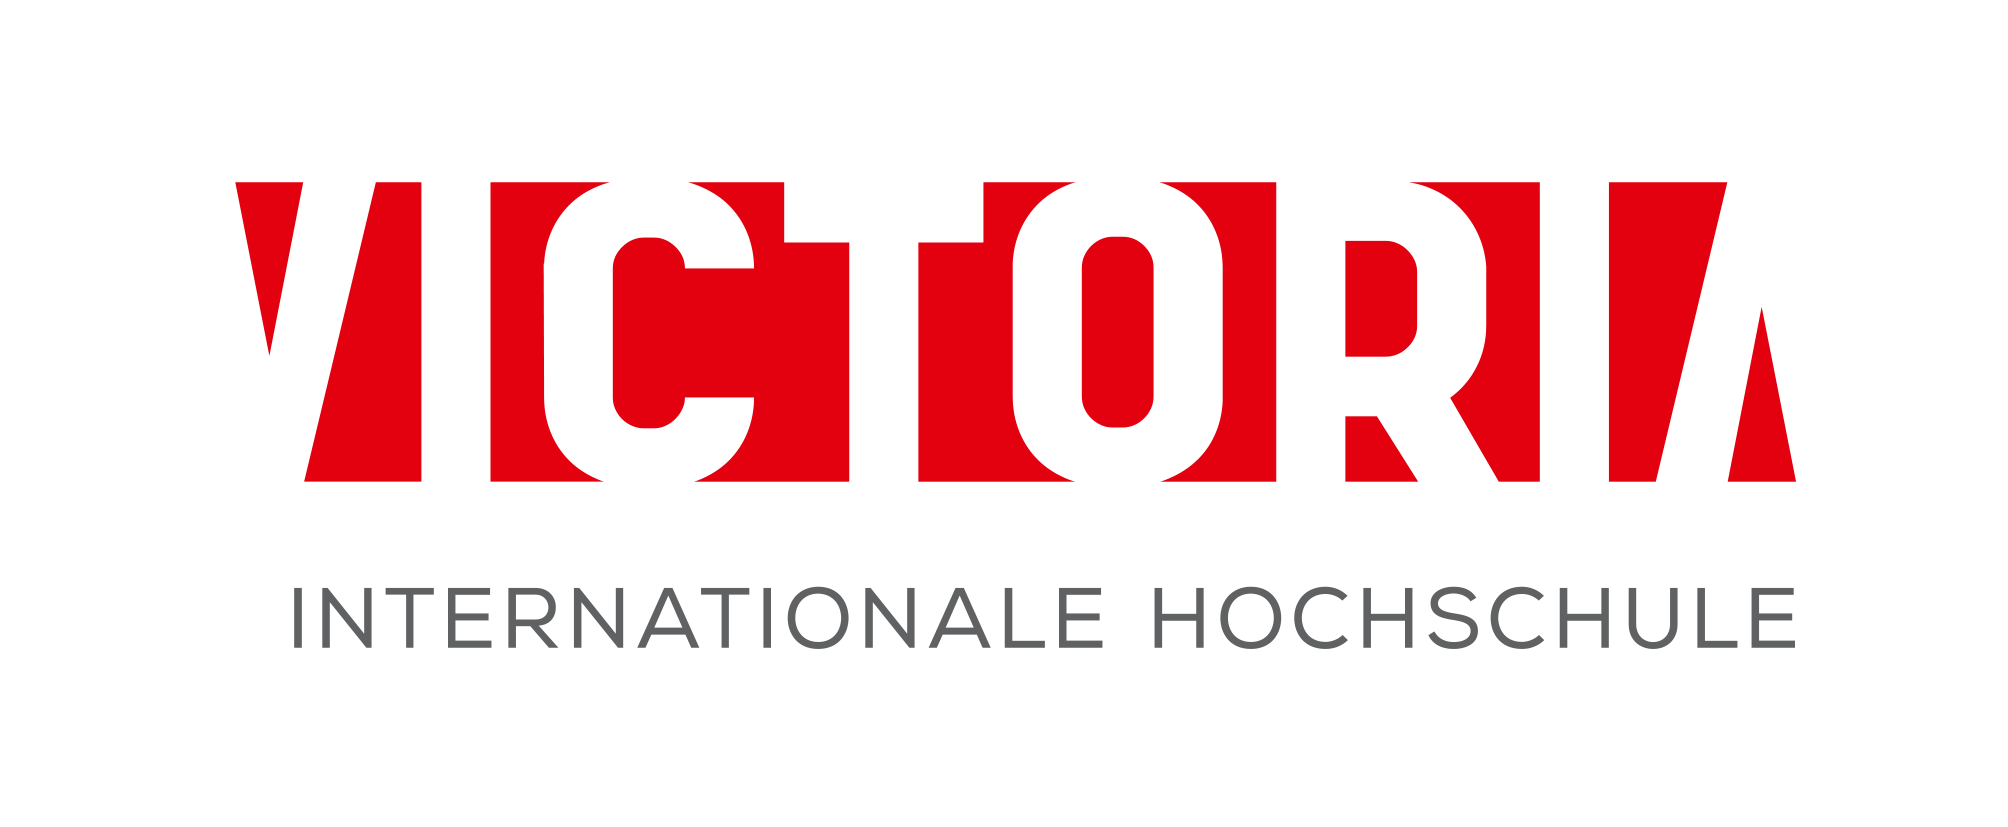 VICTORIA Internationale Hochschule Logo